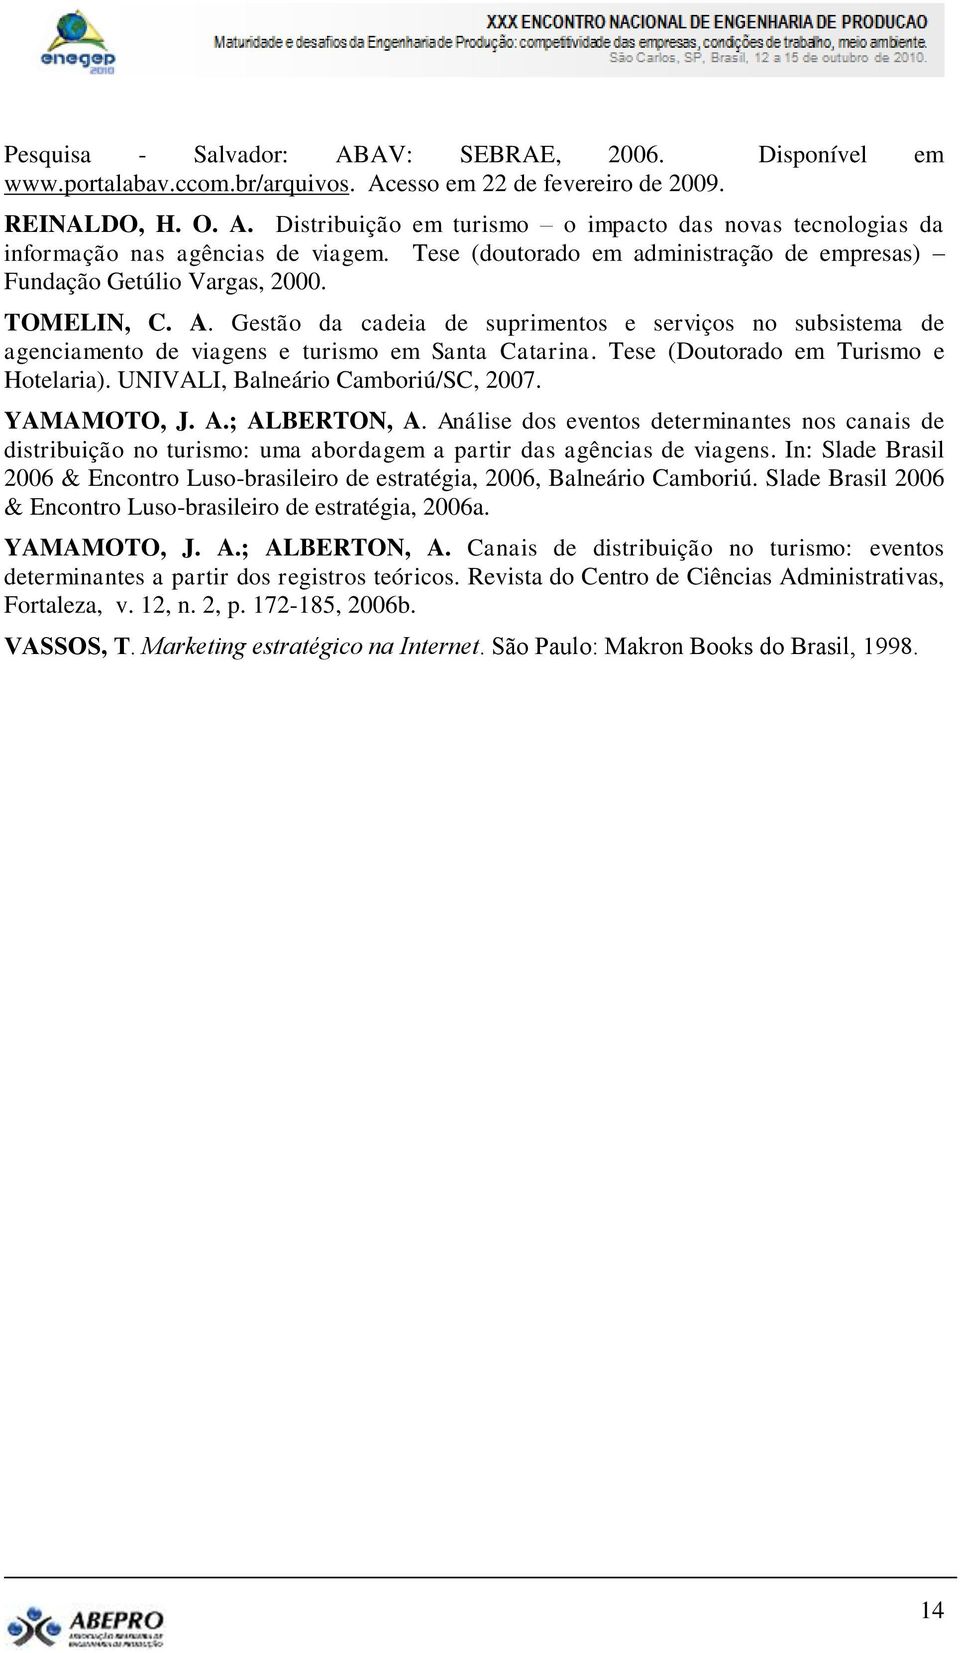 Gestão da cadeia de suprimentos e serviços no subsistema de agenciamento de viagens e turismo em Santa Catarina. Tese (Doutorado em Turismo e Hotelaria). UNIVALI, Balneário Camboriú/SC, 2007.